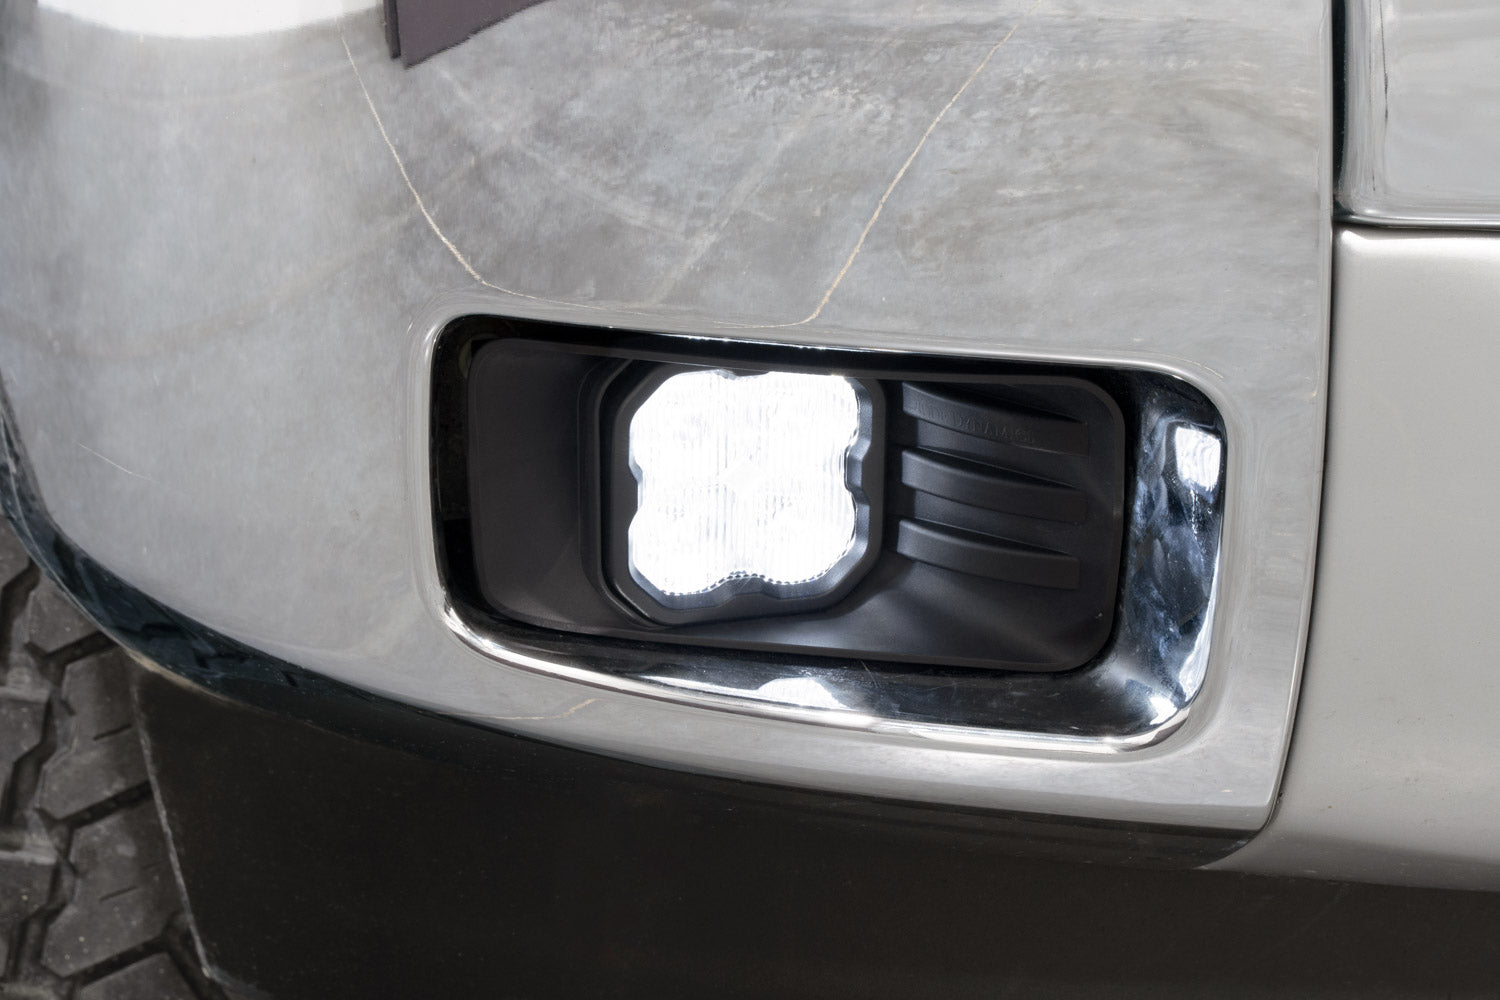 SS3 LED Fog Light Kit for 2007-2015 Chevrolet Silverado, White SAE Fog Sport Diode Dynamics